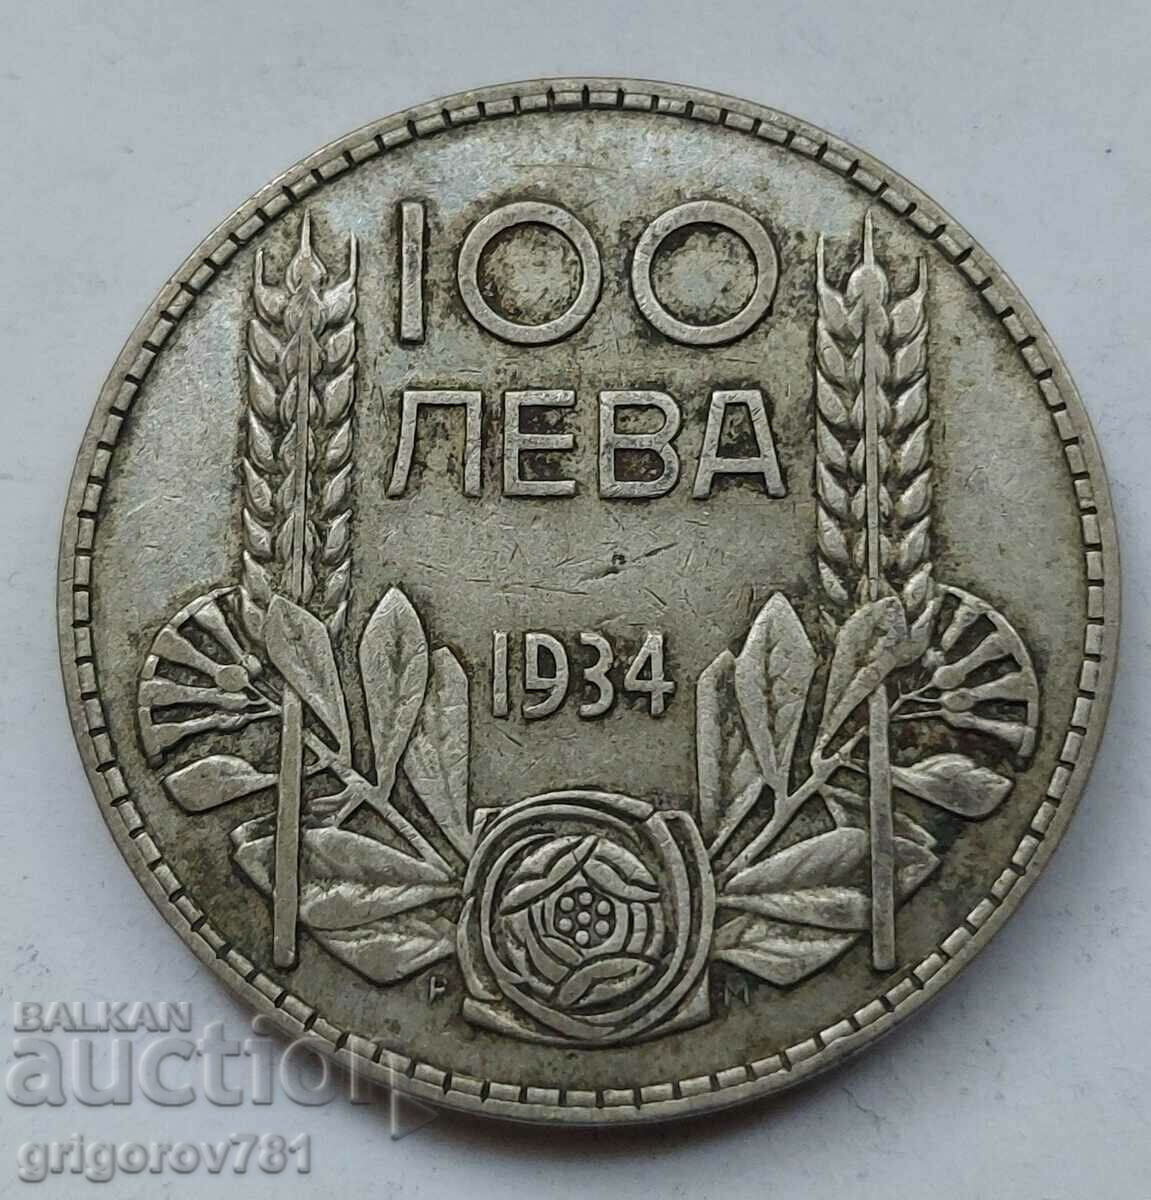 100 leva argint Bulgaria 1934 - monedă de argint #67